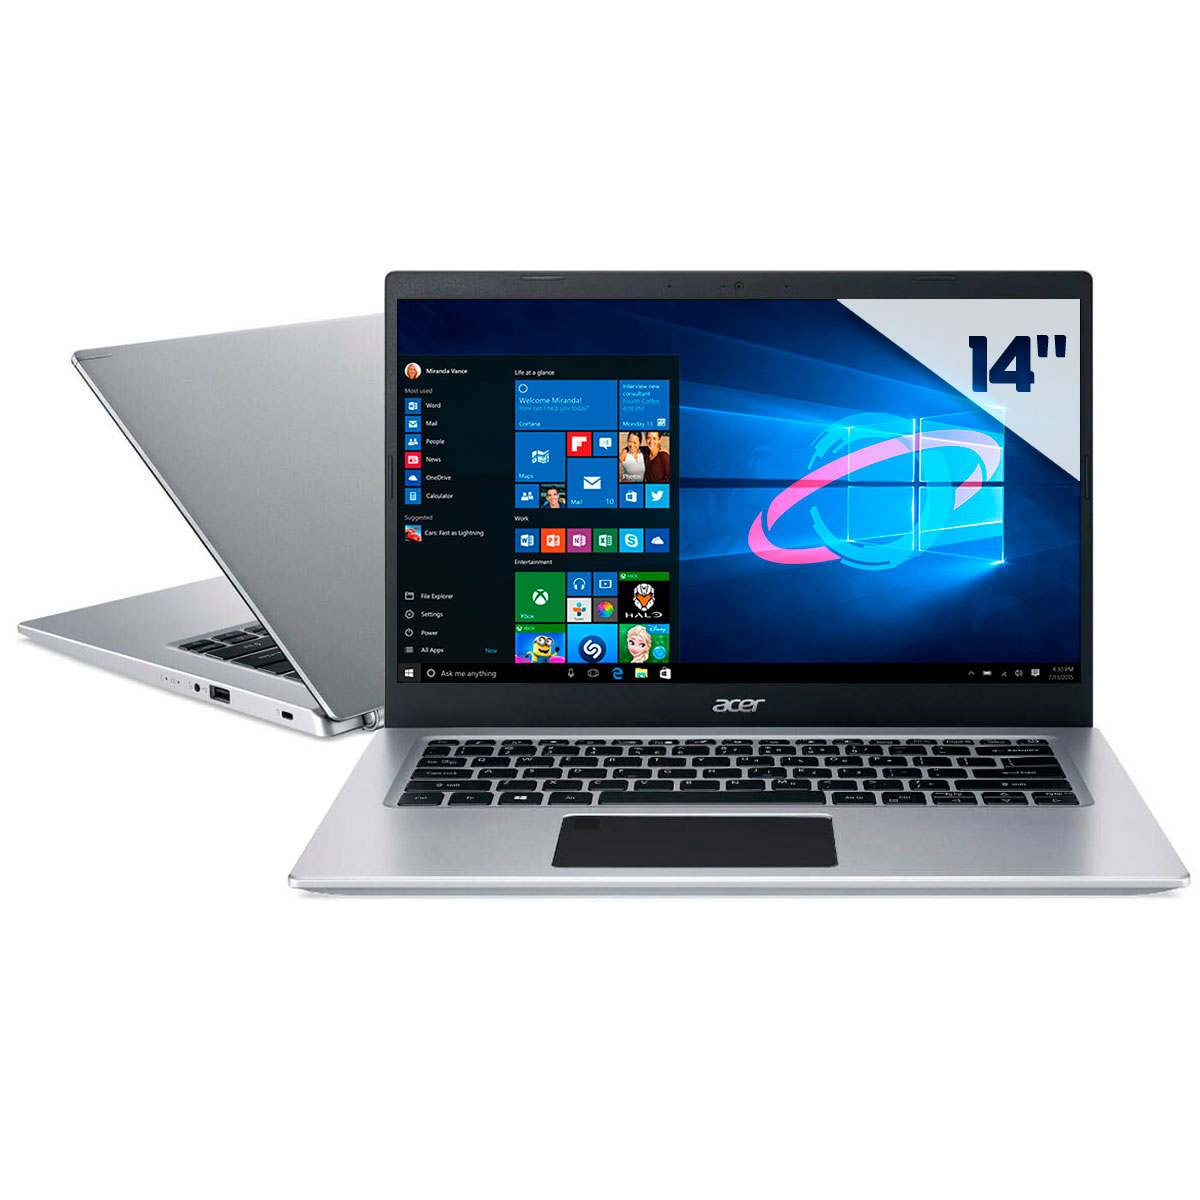 Notebook Acer Aspire A514-53-5239 - Intel i5 1035G1, RAM 20GB, SSD 256GB + HD 1TB, Tela 14